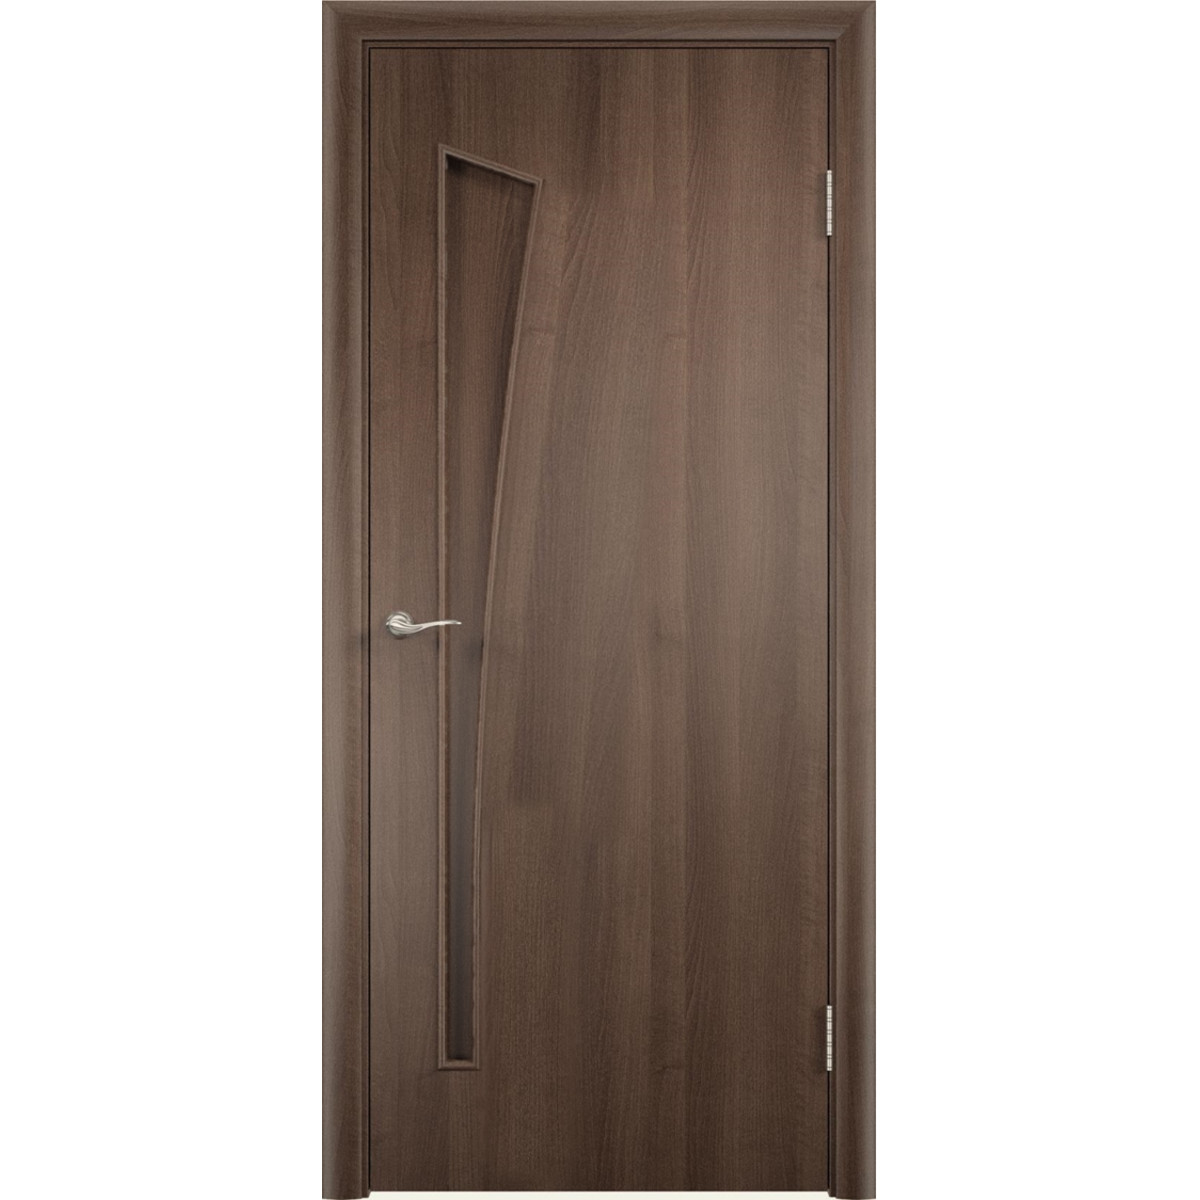 Дверь межкомнатная глухая без замка и петель в комплекте Белеза 80x200 см ламинация цвет дуб тёрнер коричневый